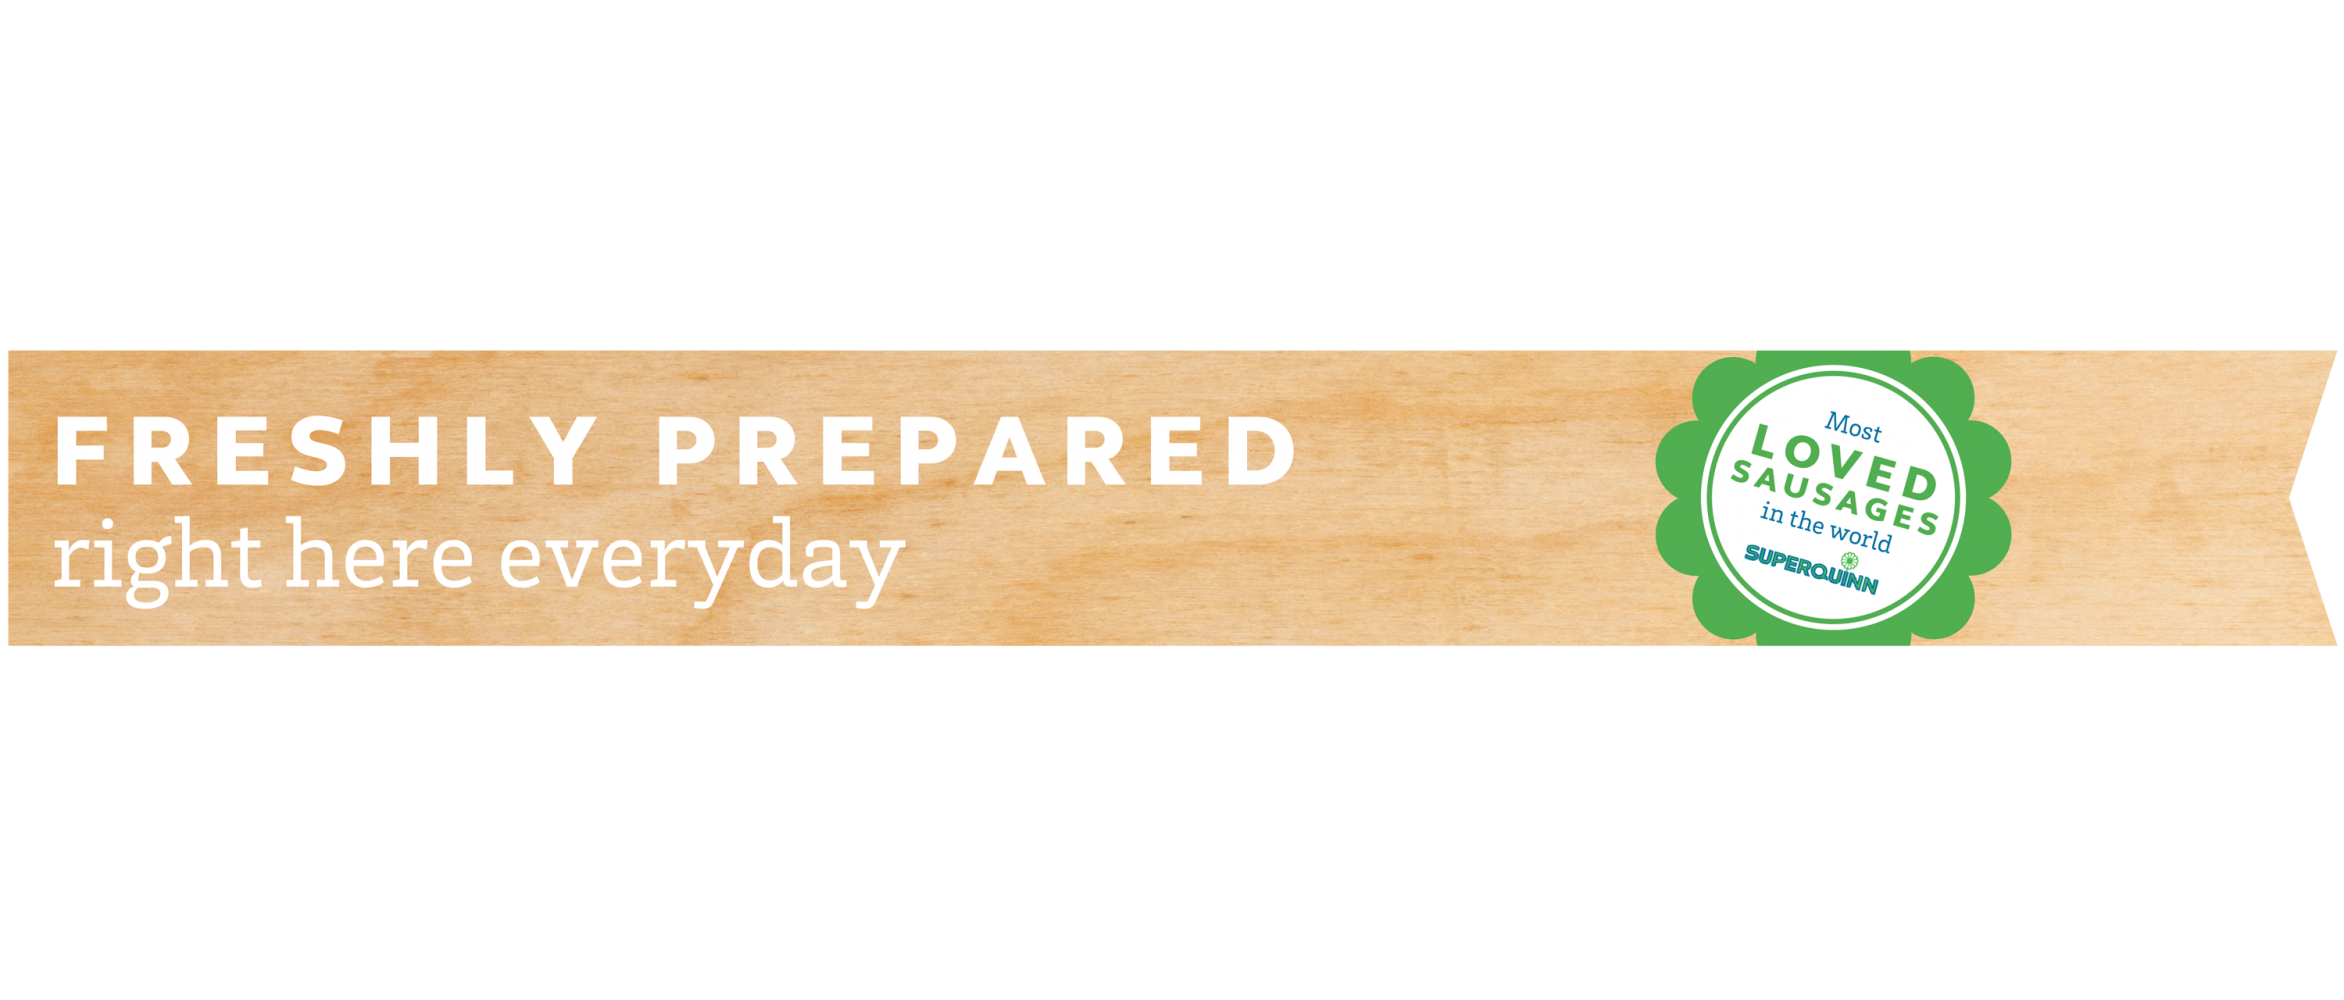 'Freshly prepared right here everyday' Supervalu VM, Supermarket Franchise Design by Household.